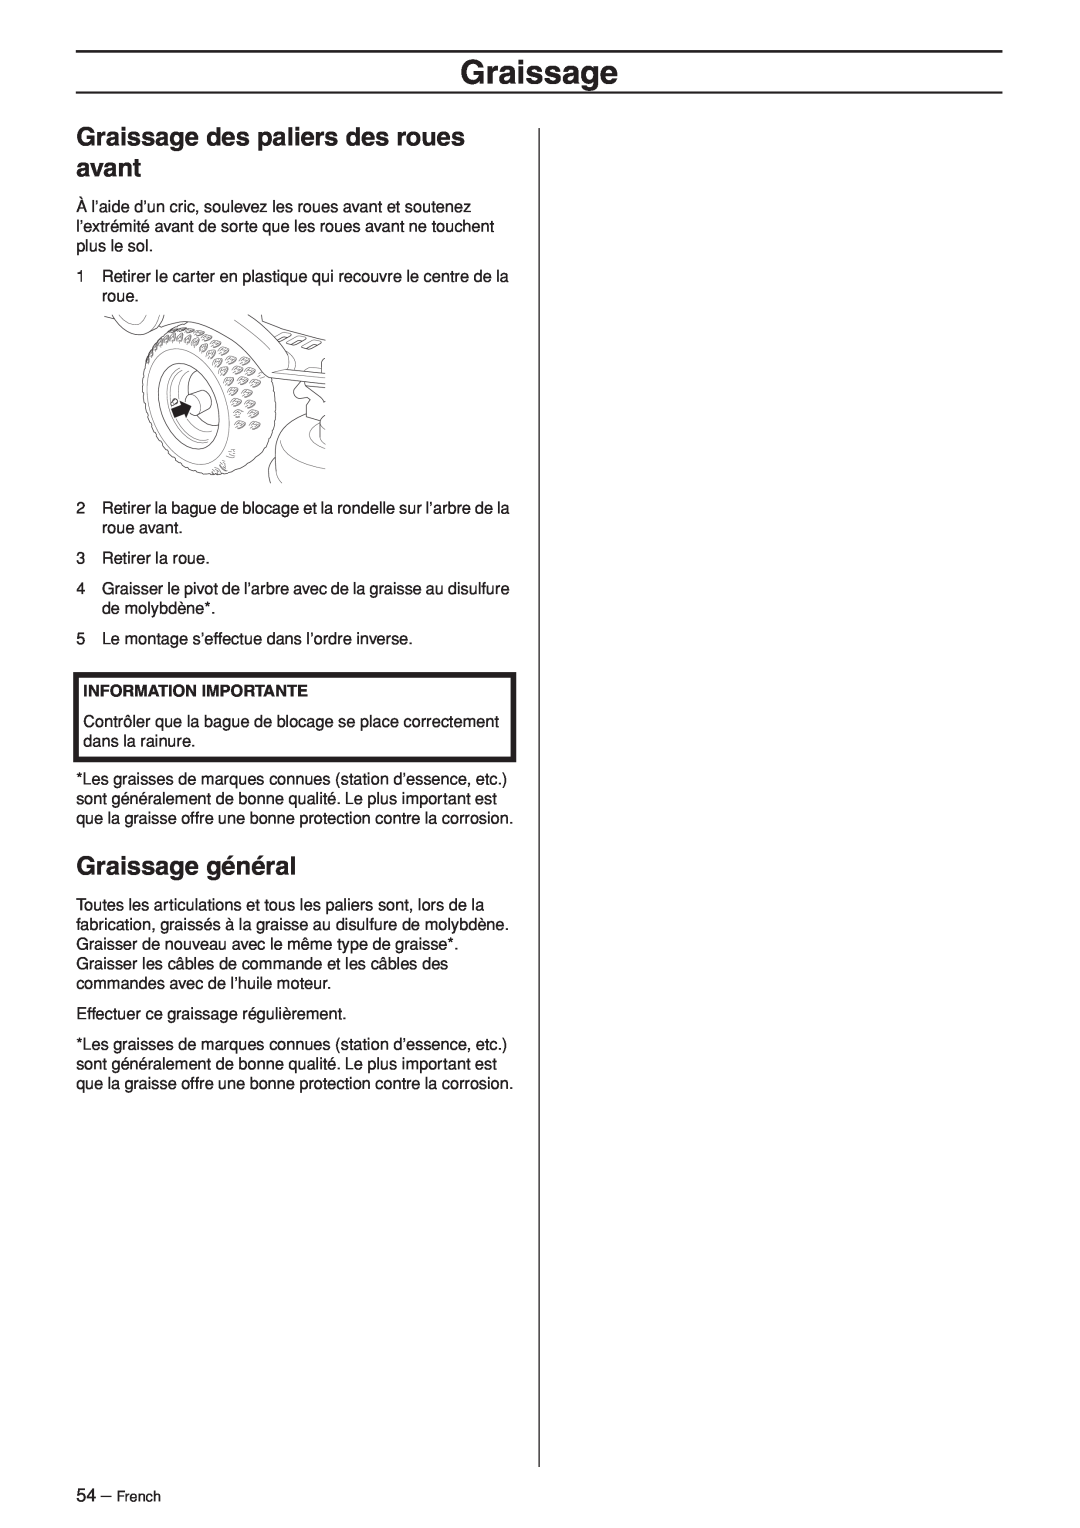 Husqvarna R120S manuel dutilisation Graissage des paliers des roues avant, Graissage général, Information Importante 